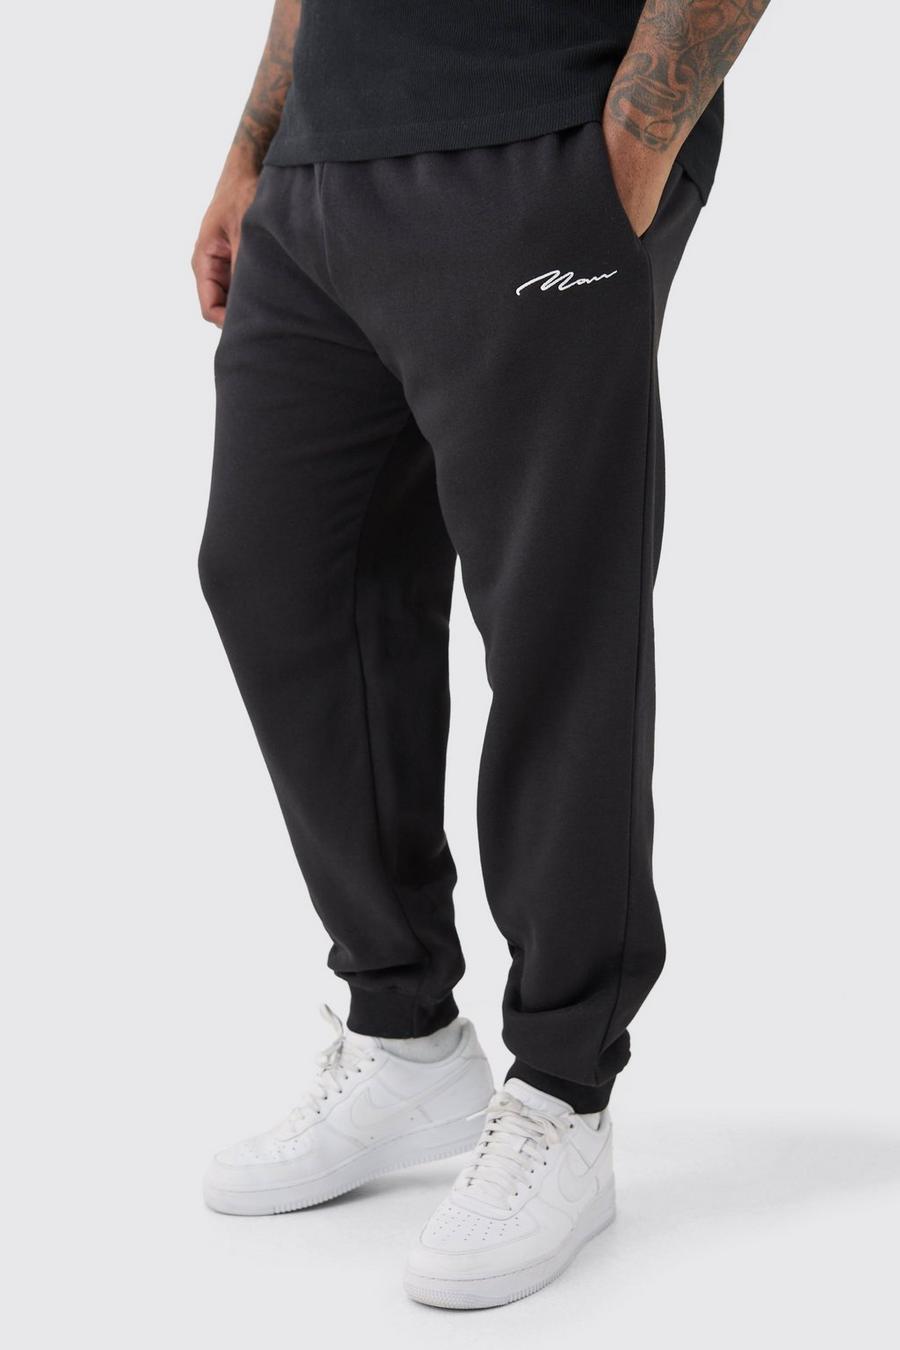 Pantalón deportivo Plus ajustado negro con firma MAN, Black